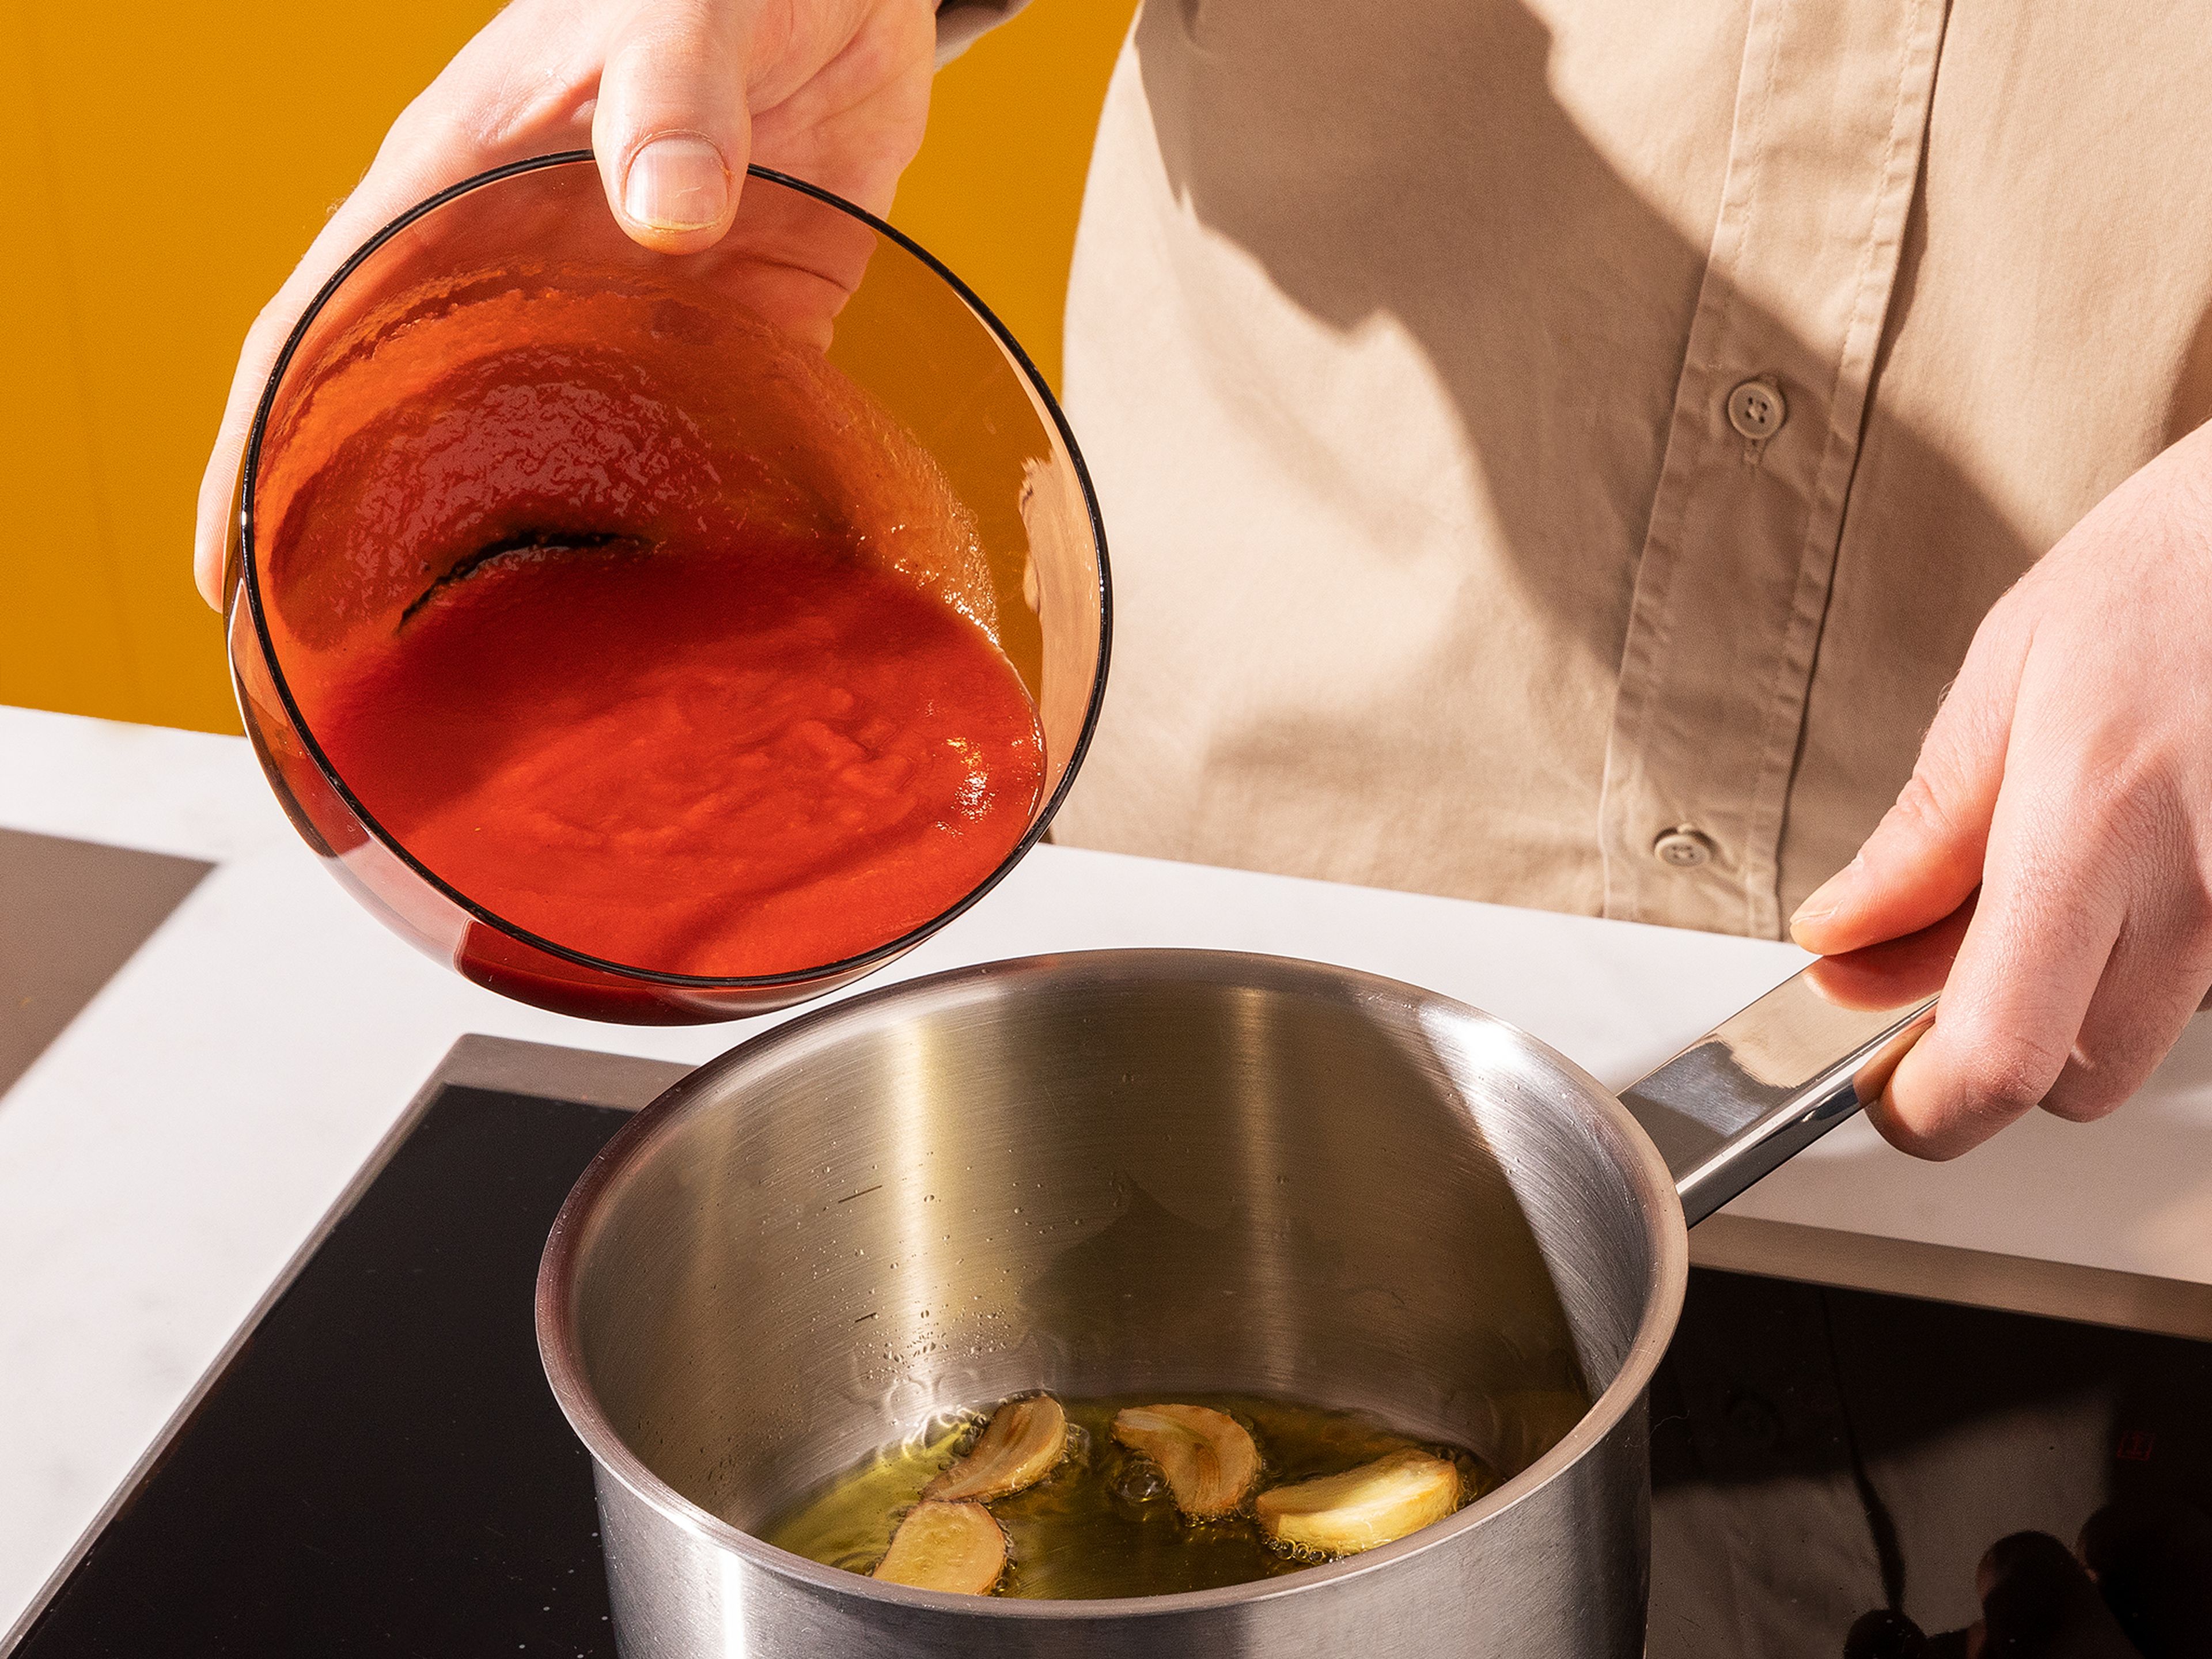 Inzwischen die Soße vorbereiten: Rest des Olivenöls mit dem Knoblauch in einen kleinen Topf geben und bei mittlerer Stufe solange erhitzen, bis der Knoblauch beginnt, bräunlich zu werden. Dann die passierten Tomaten hinzugeben und mit getrocknetem Oregano, Salz und Pfeffer würzen. Soße auf niedriger bis mittlerer Hitze köcheln lassen, bis das Ofengemüse fertig ist, ca. 5 Min.